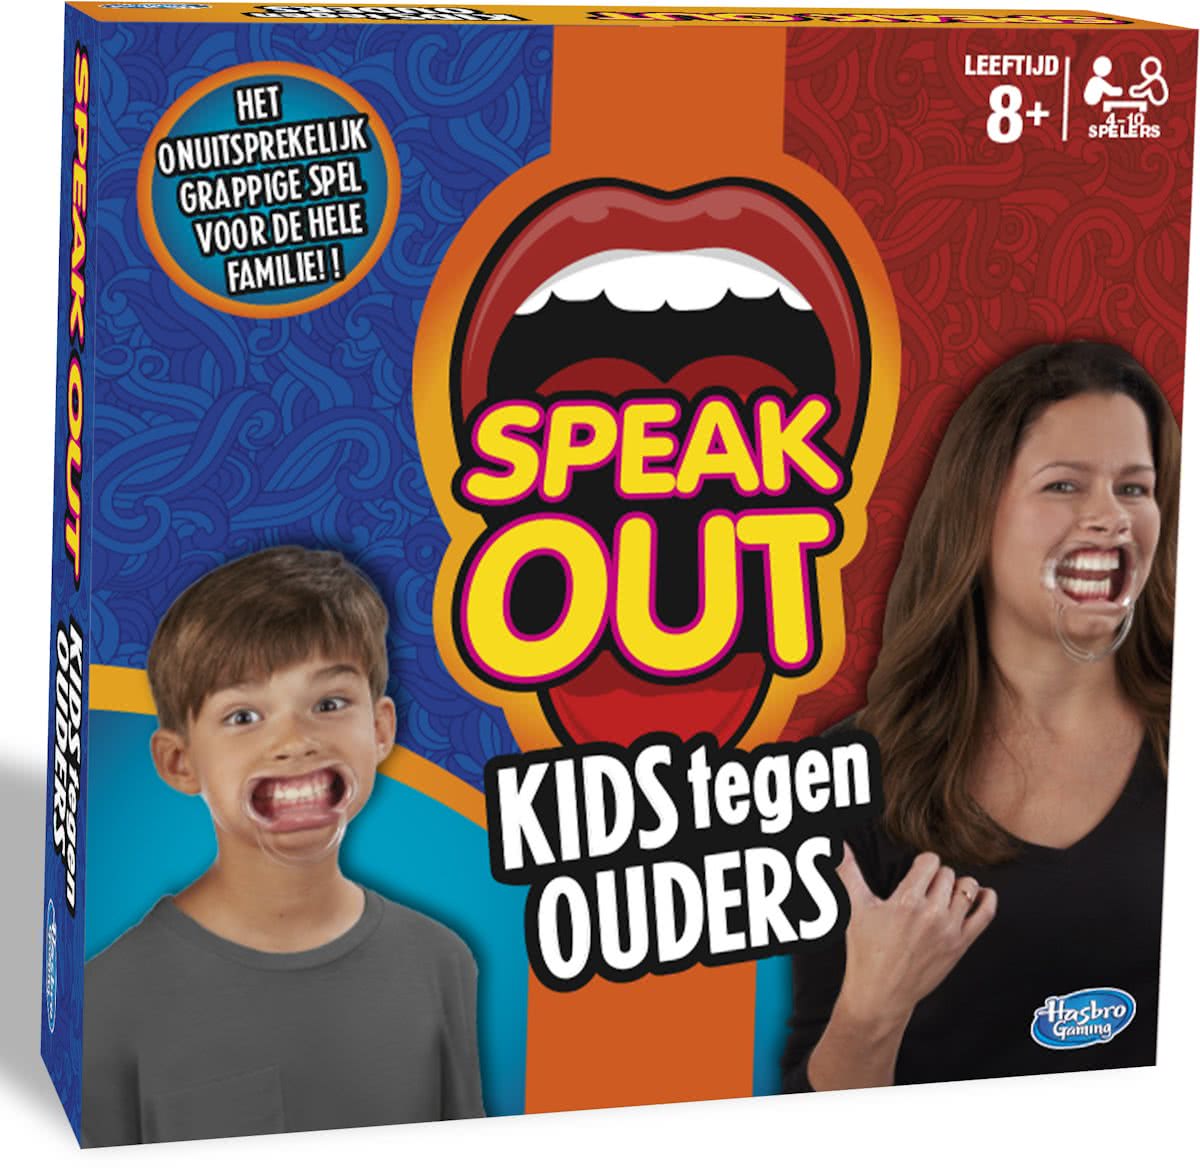 Speak Out Kids tegen Ouders - Partyspel